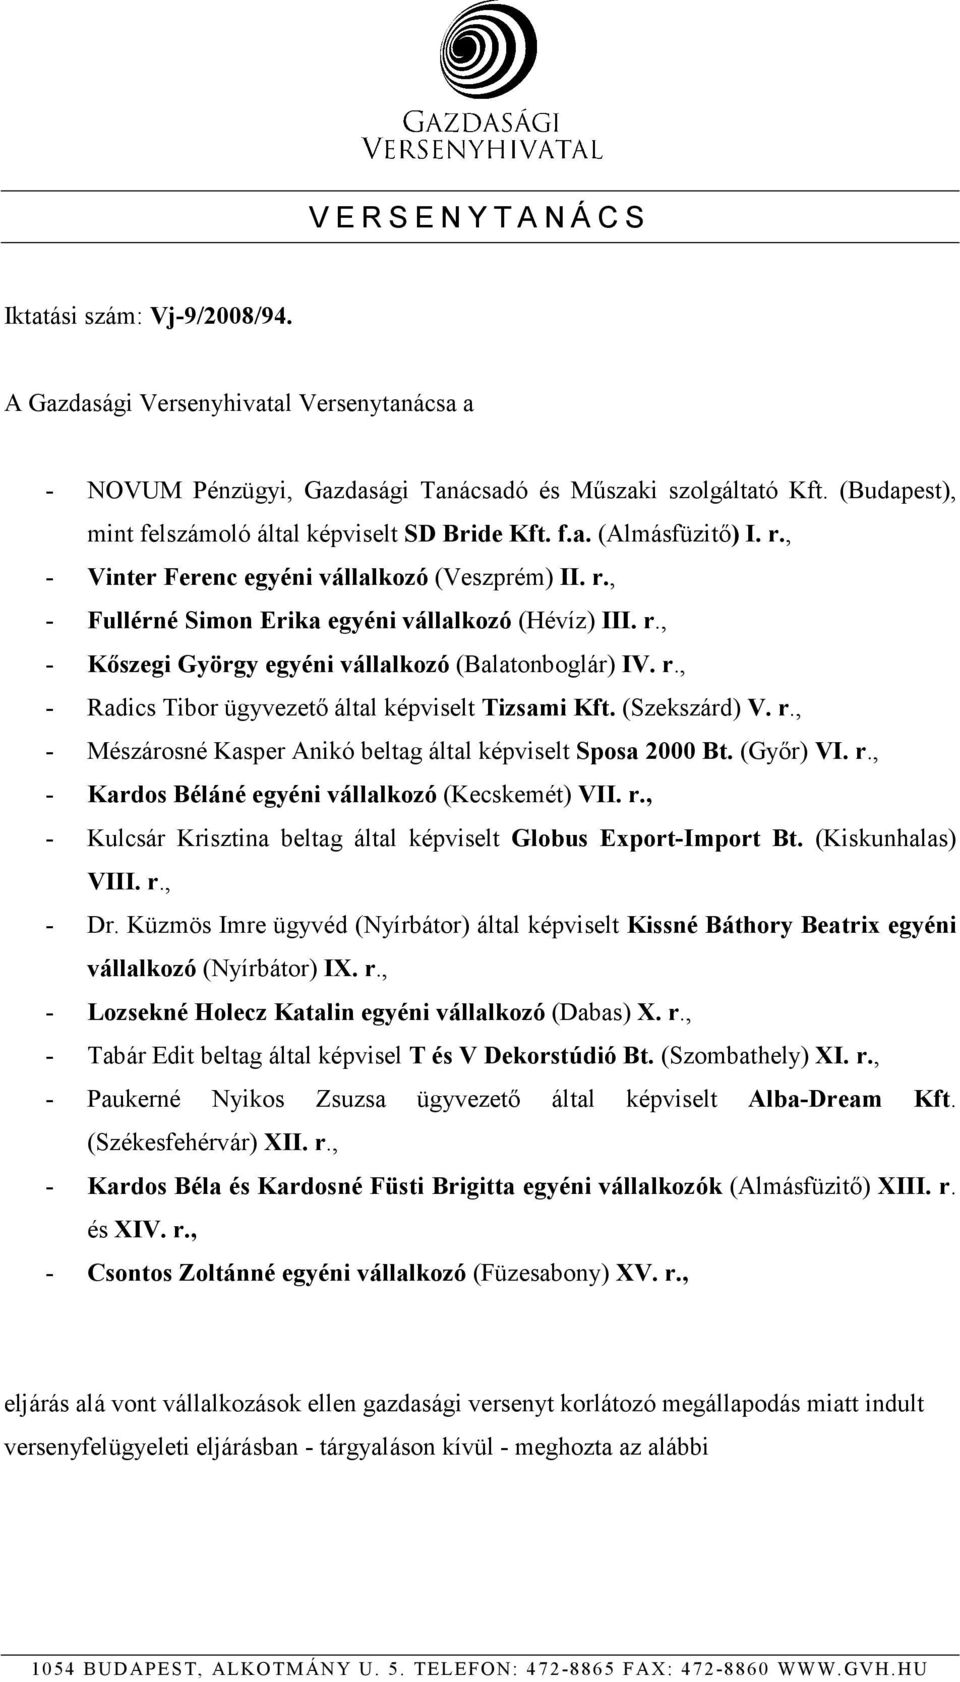 r., - Radics Tibor ügyvezetı által képviselt Tizsami Kft. (Szekszárd) V. r., - Mészárosné Kasper Anikó beltag által képviselt Sposa 2000 Bt. (Gyır) VI. r., - Kardos Béláné egyéni vállalkozó (Kecskemét) VII.